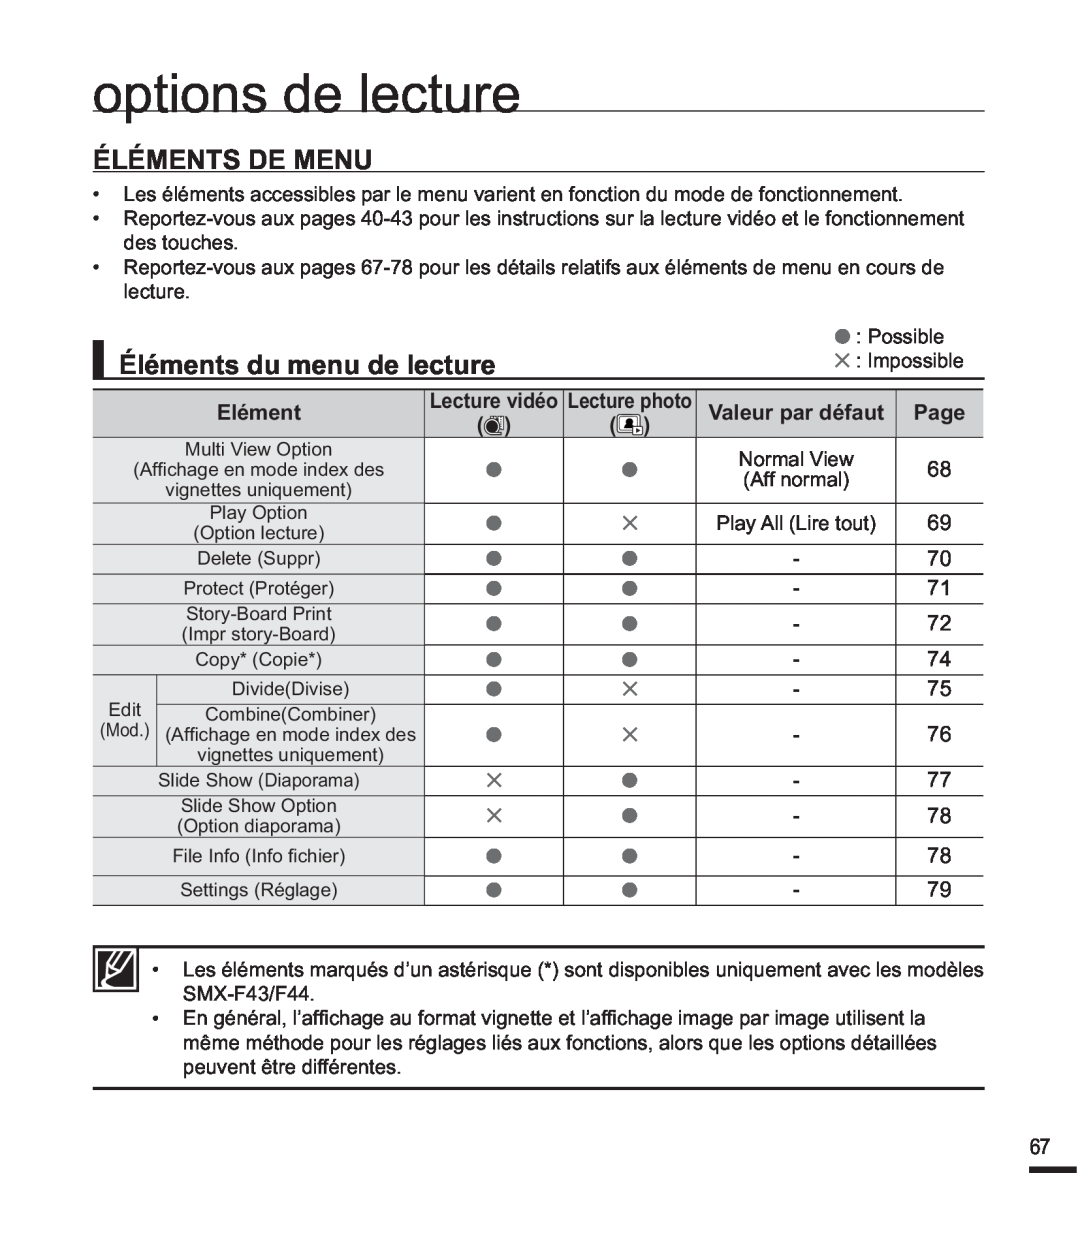 Samsung SMX-F44SP/EDC manual options de lecture, Éléments De Menu, Éléments du menu de lecture, Elément, Page, GhvWrxfkhv 